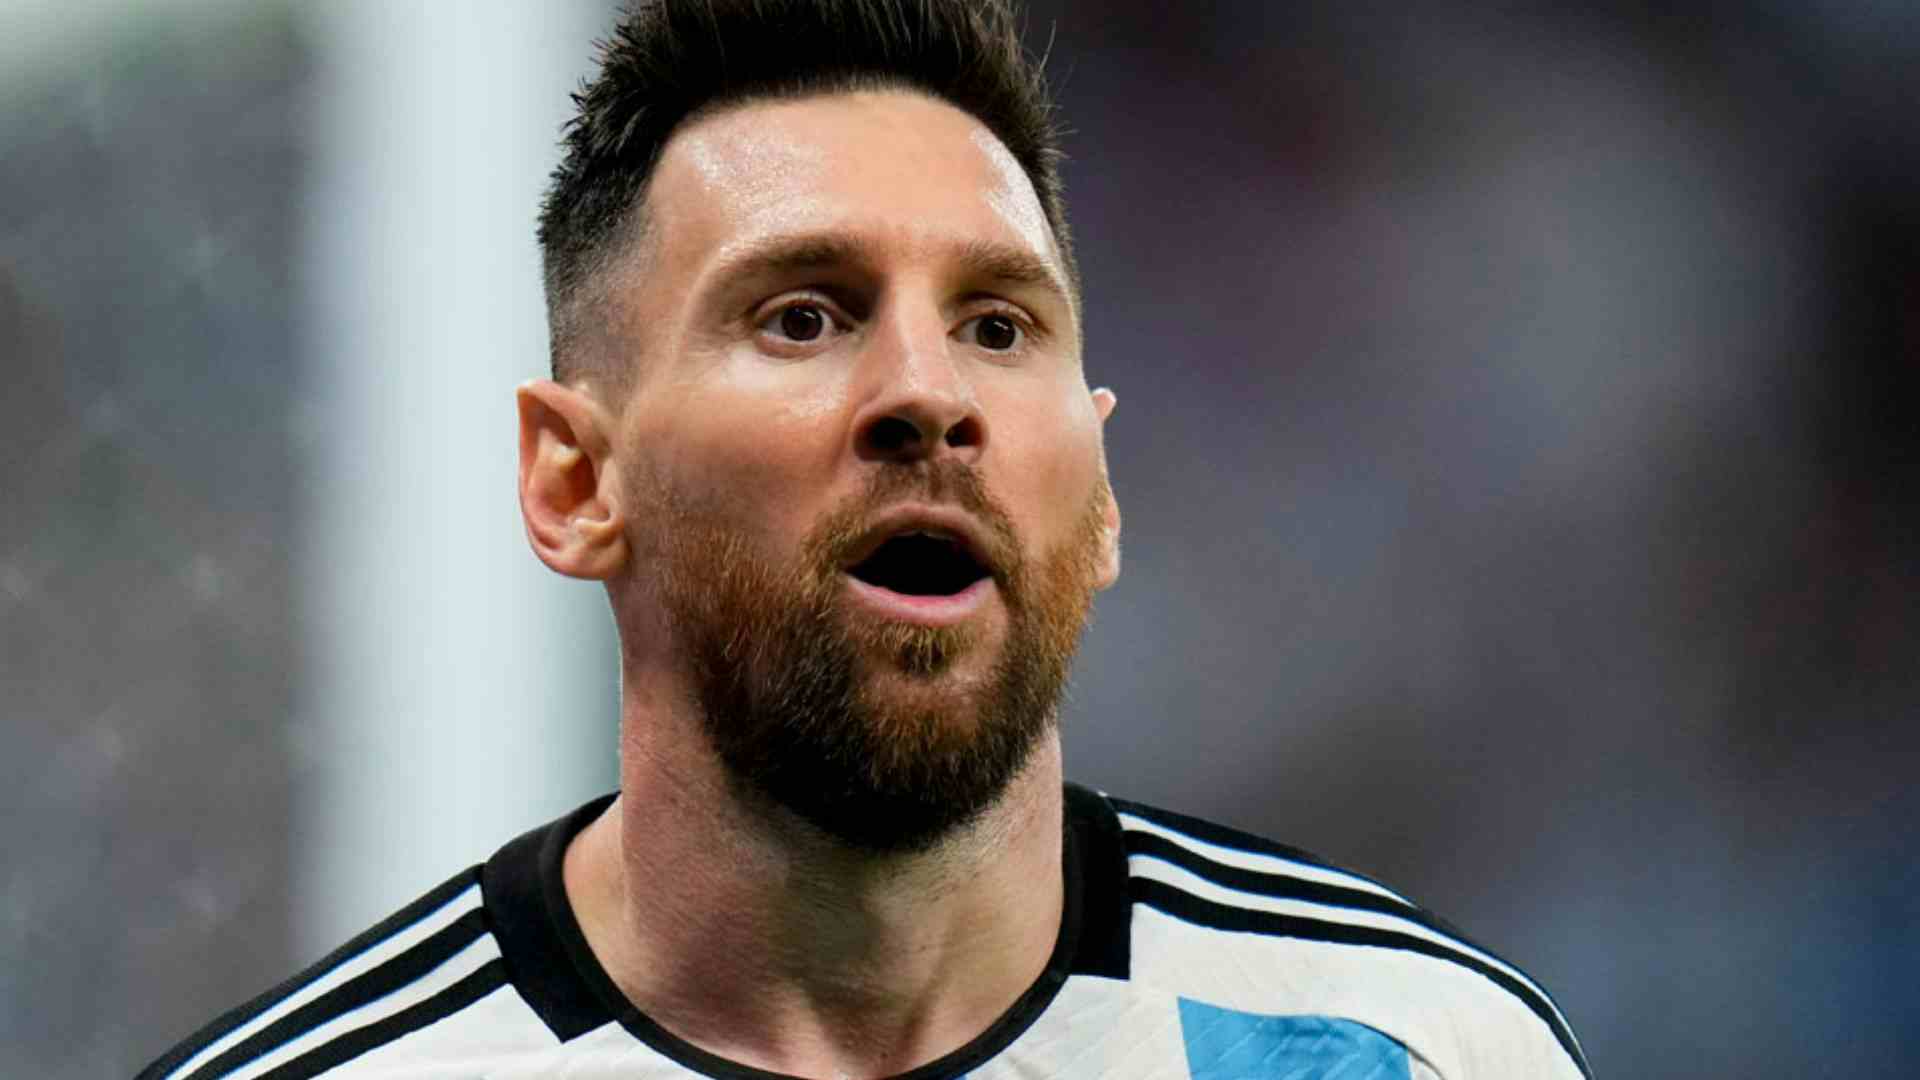 "Messi è stato modificato geneticamente con steroidi e ormoni". Gravissima accusa dell'ex calciatore